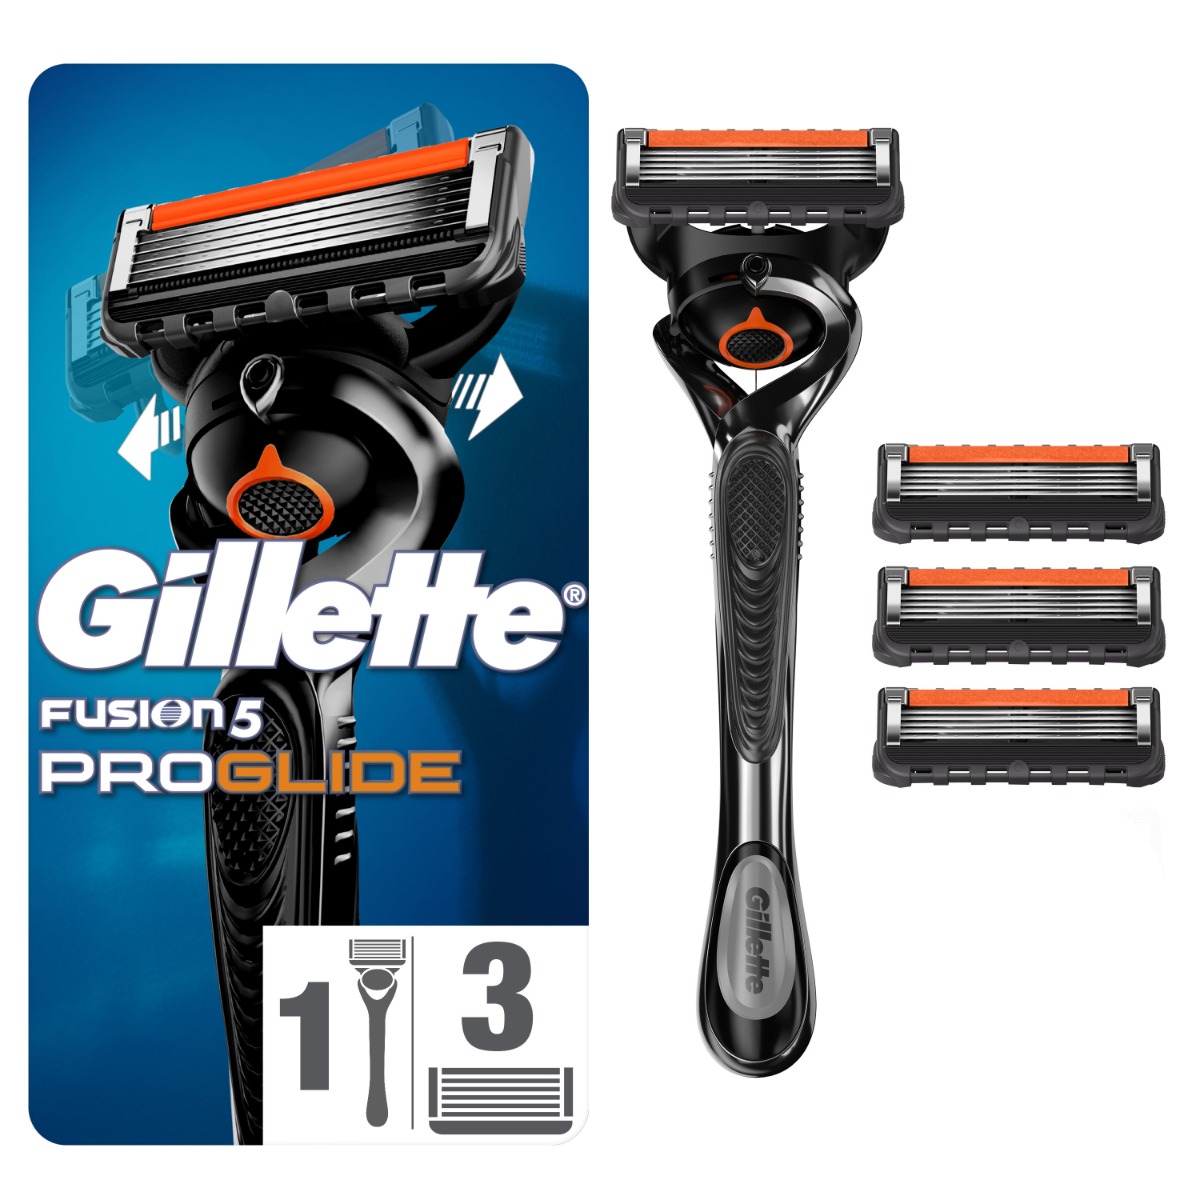 Gillette Fusion5 ProGlide pánský holicí strojek + 4 hlavice Gillette